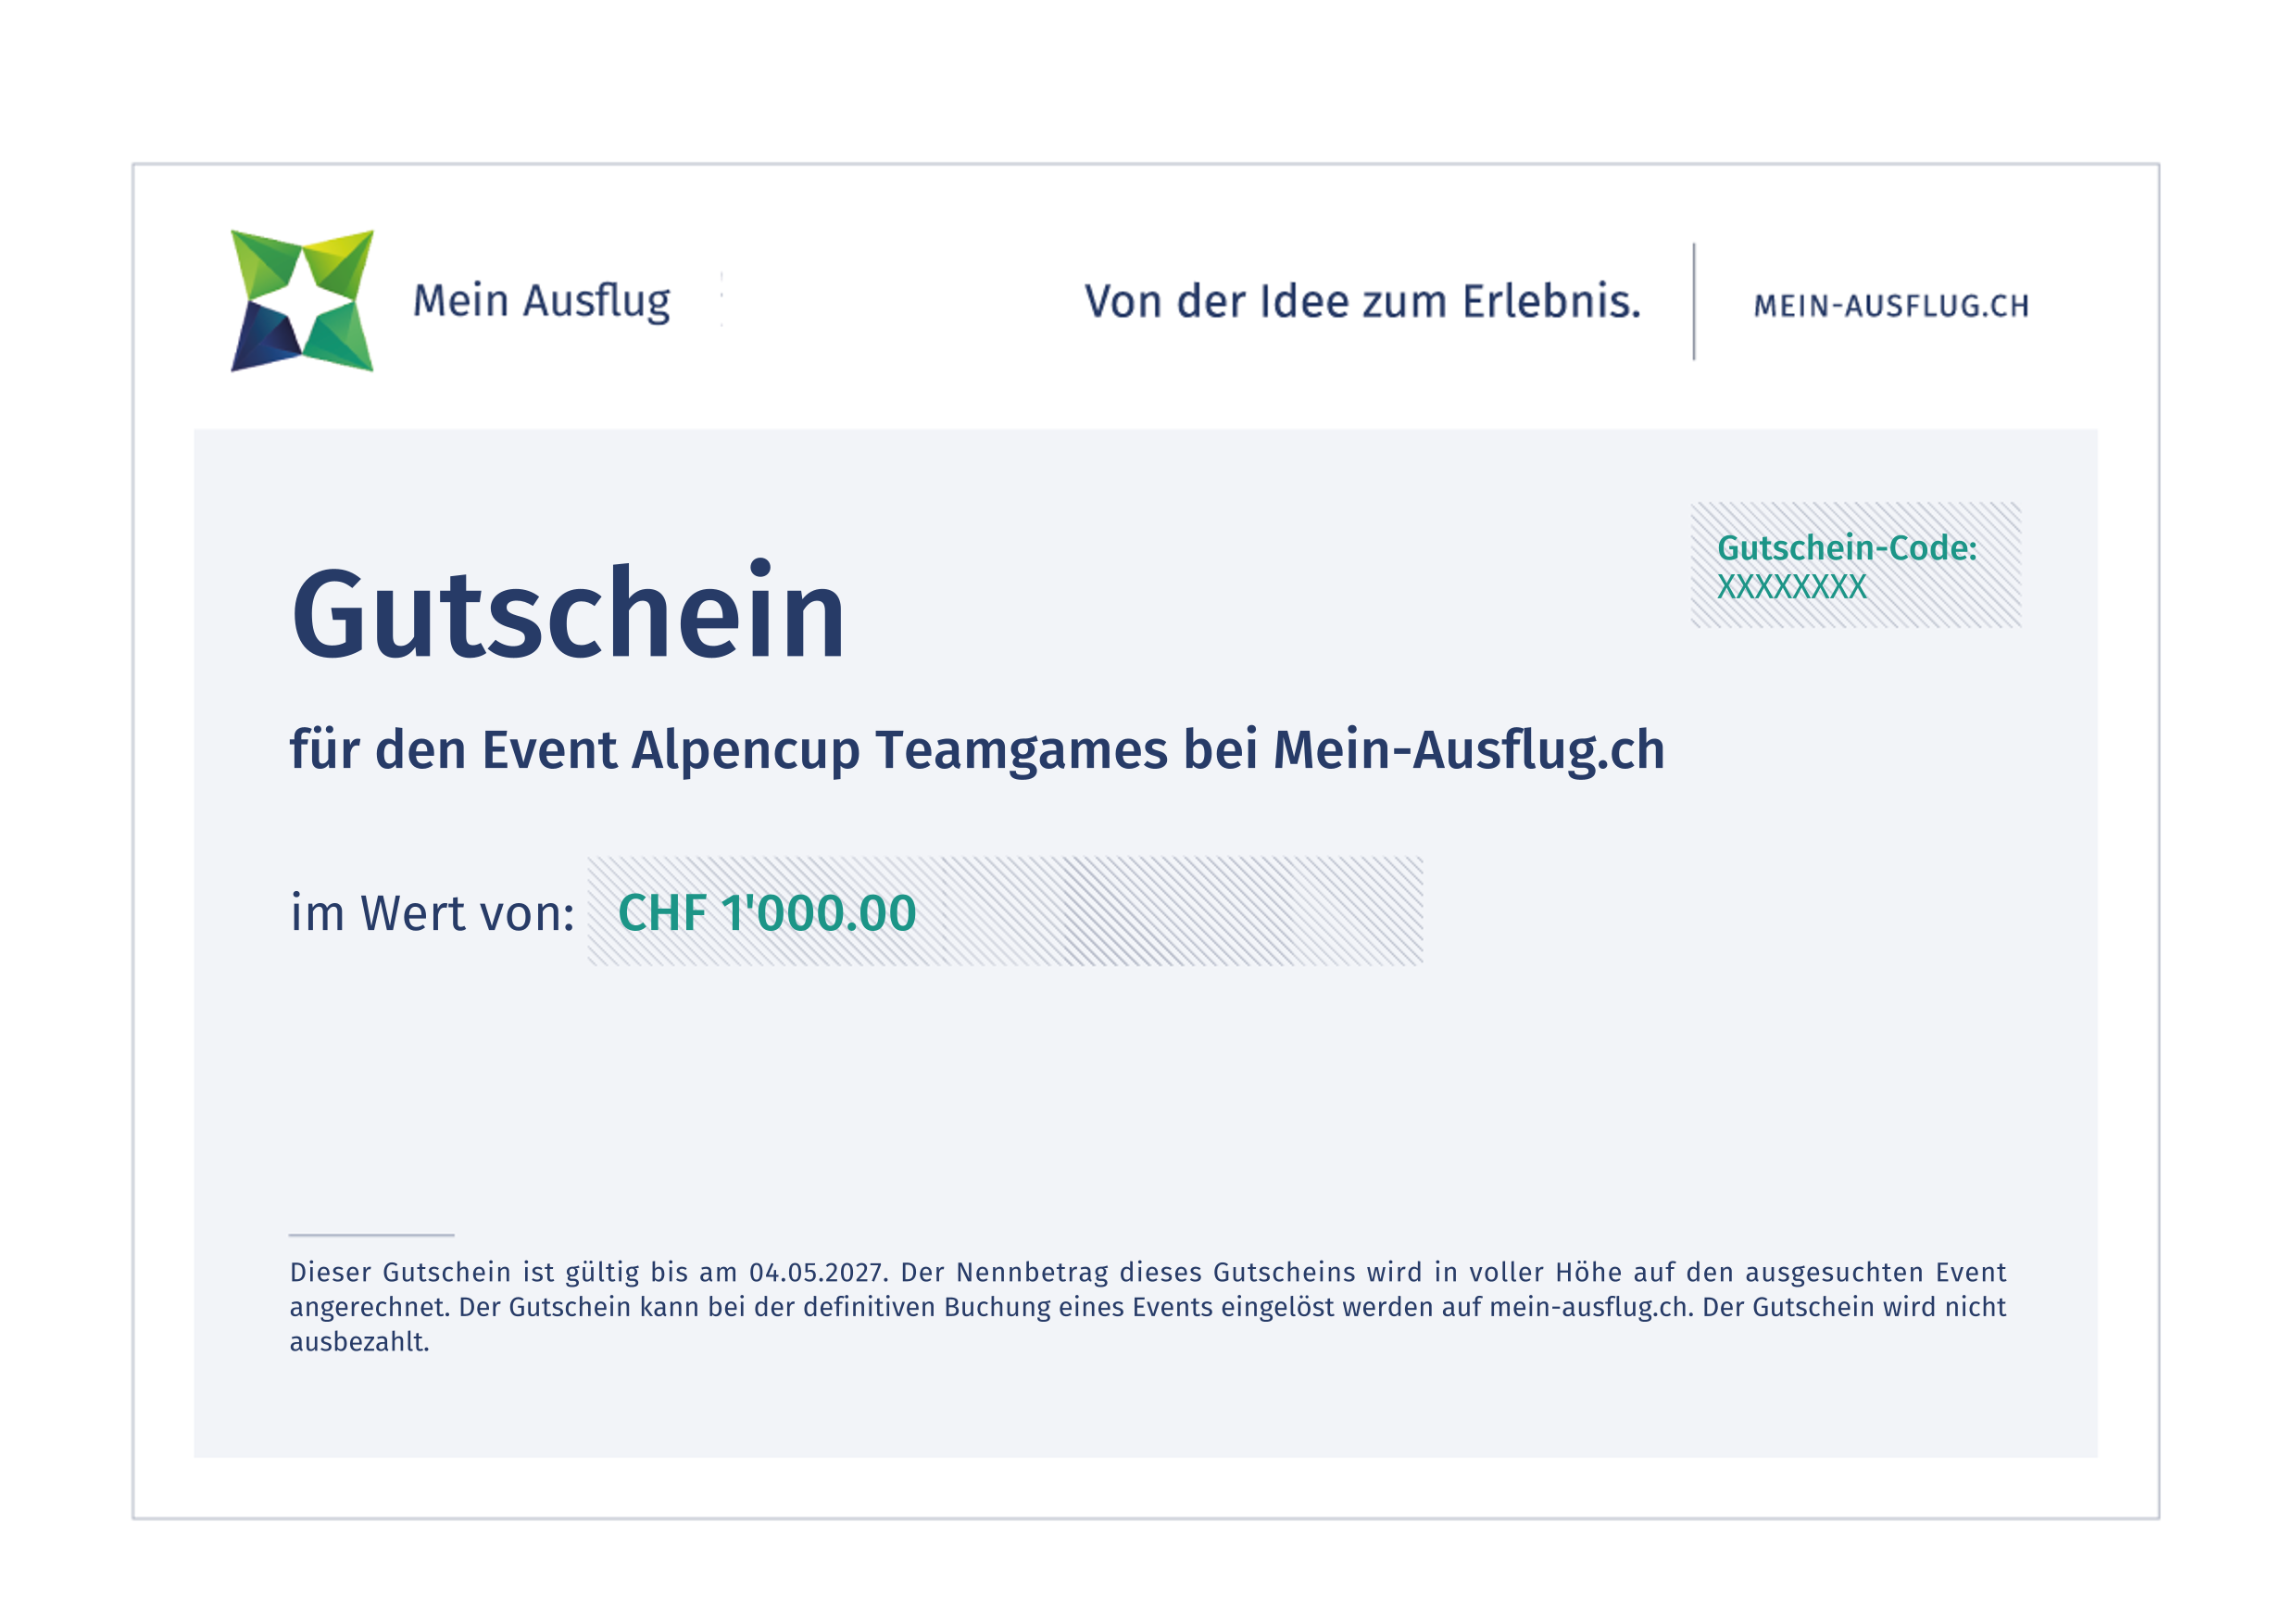 Alpencup Teamgames